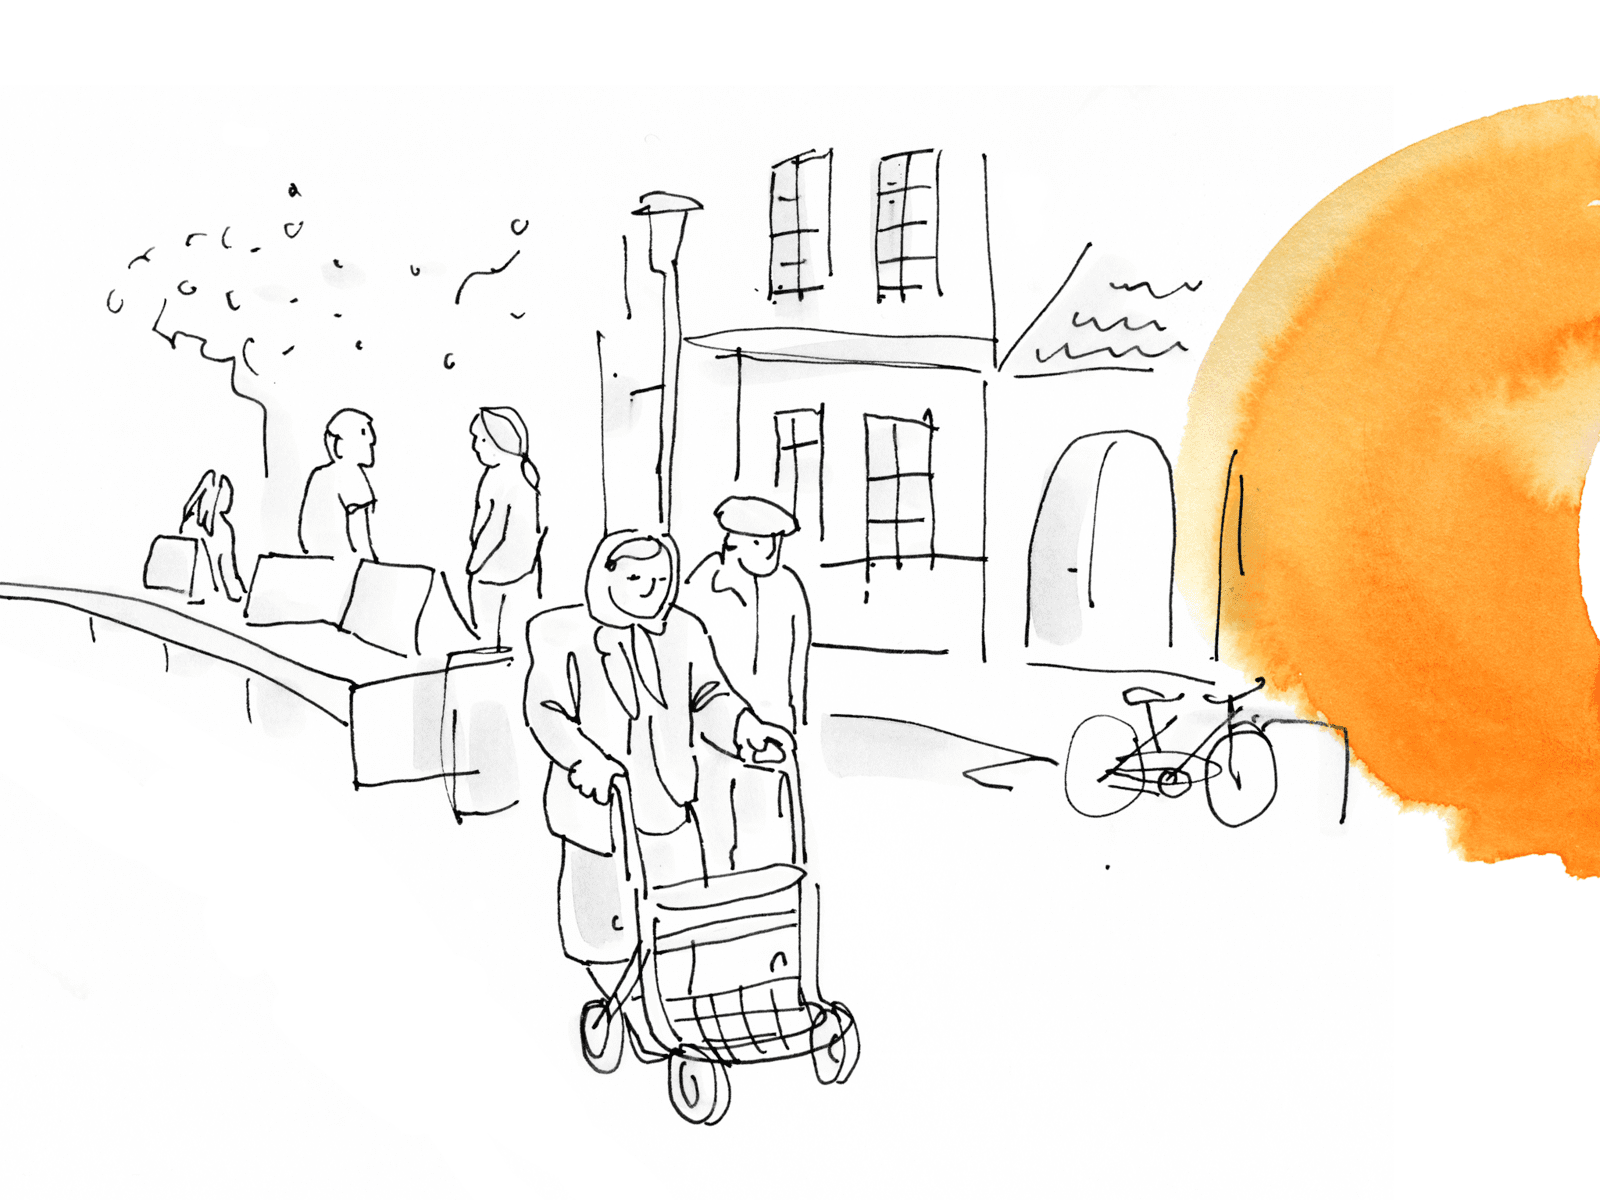 Eine in weiß gehaltene Zeichnung, die ältere Menschen zeigt. An der Seite orangene Farbkleckse.